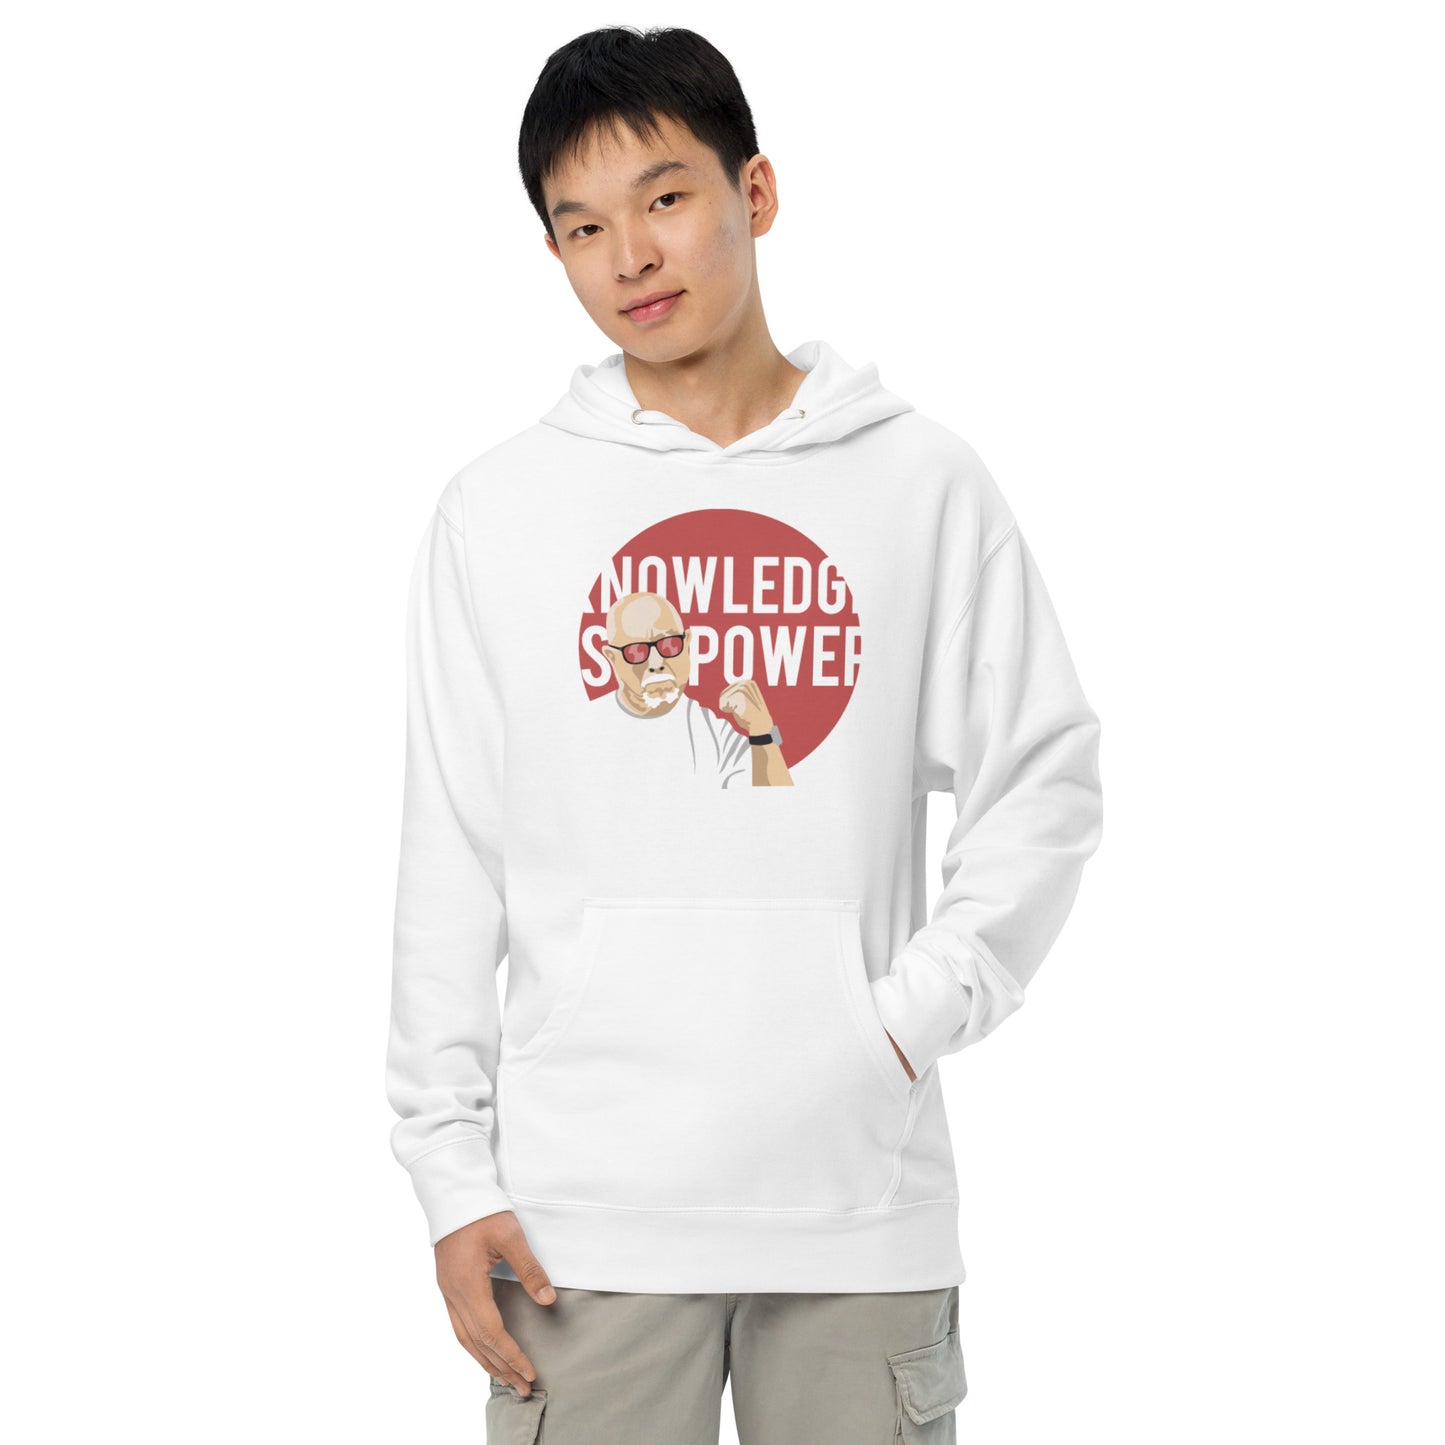 Knowledge is power hoodie - light